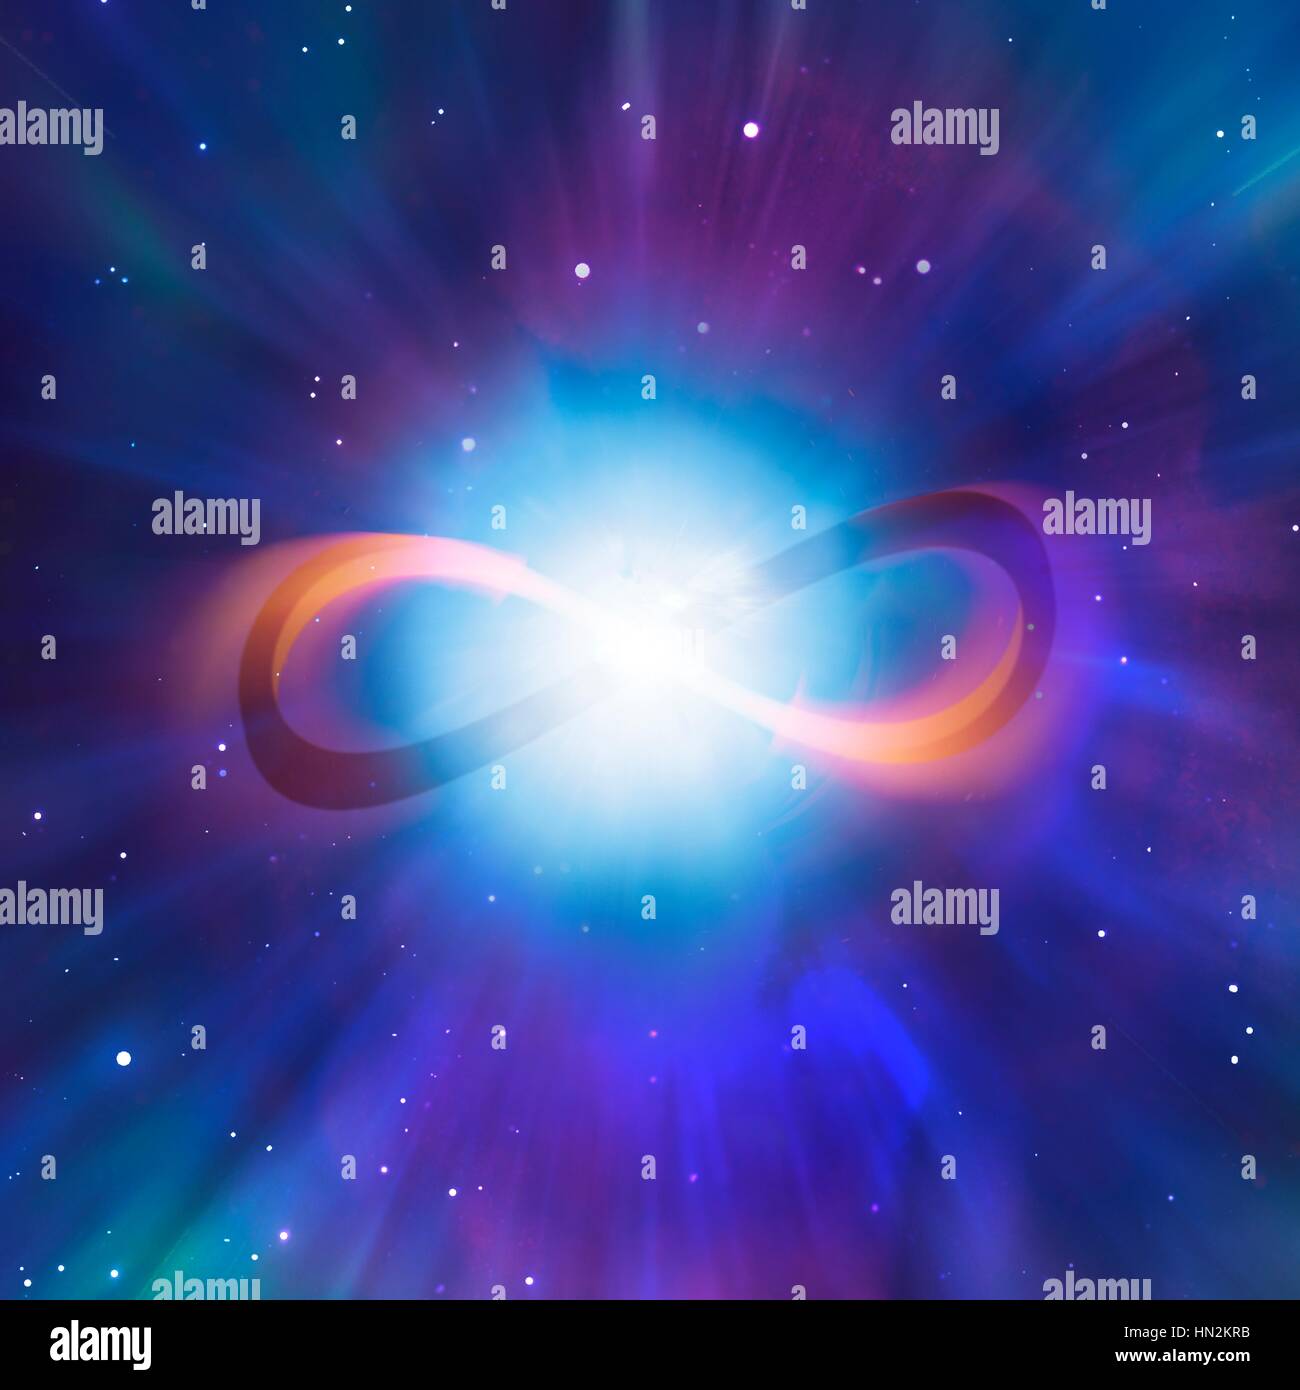 Boucle infini vu contre un rayonnement cosmique de fond représentant le big bang et la cosmologie. Ce symbole représente le concept mathématique de l'infini, sans limite, sans limite ou montant. Banque D'Images